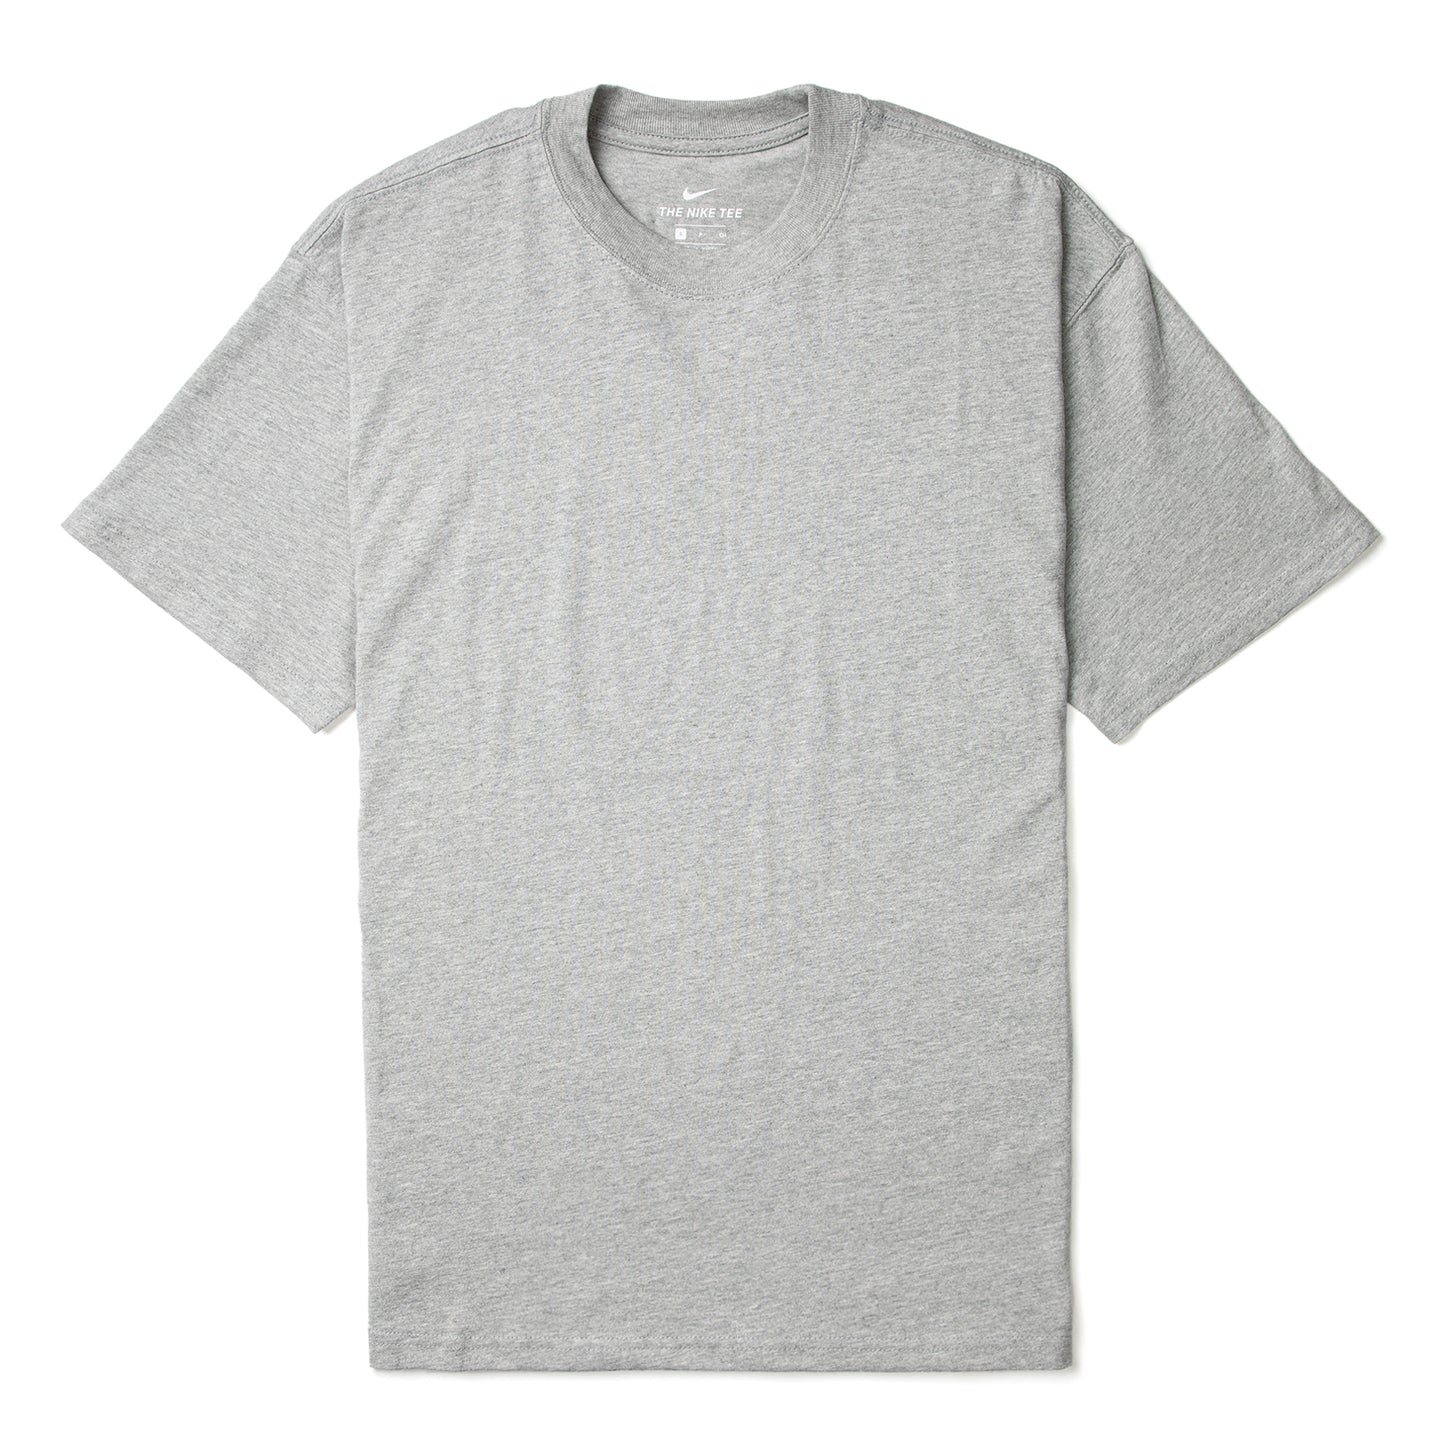 Nike SB Skate T-Shirt (Dark Grey Heather)